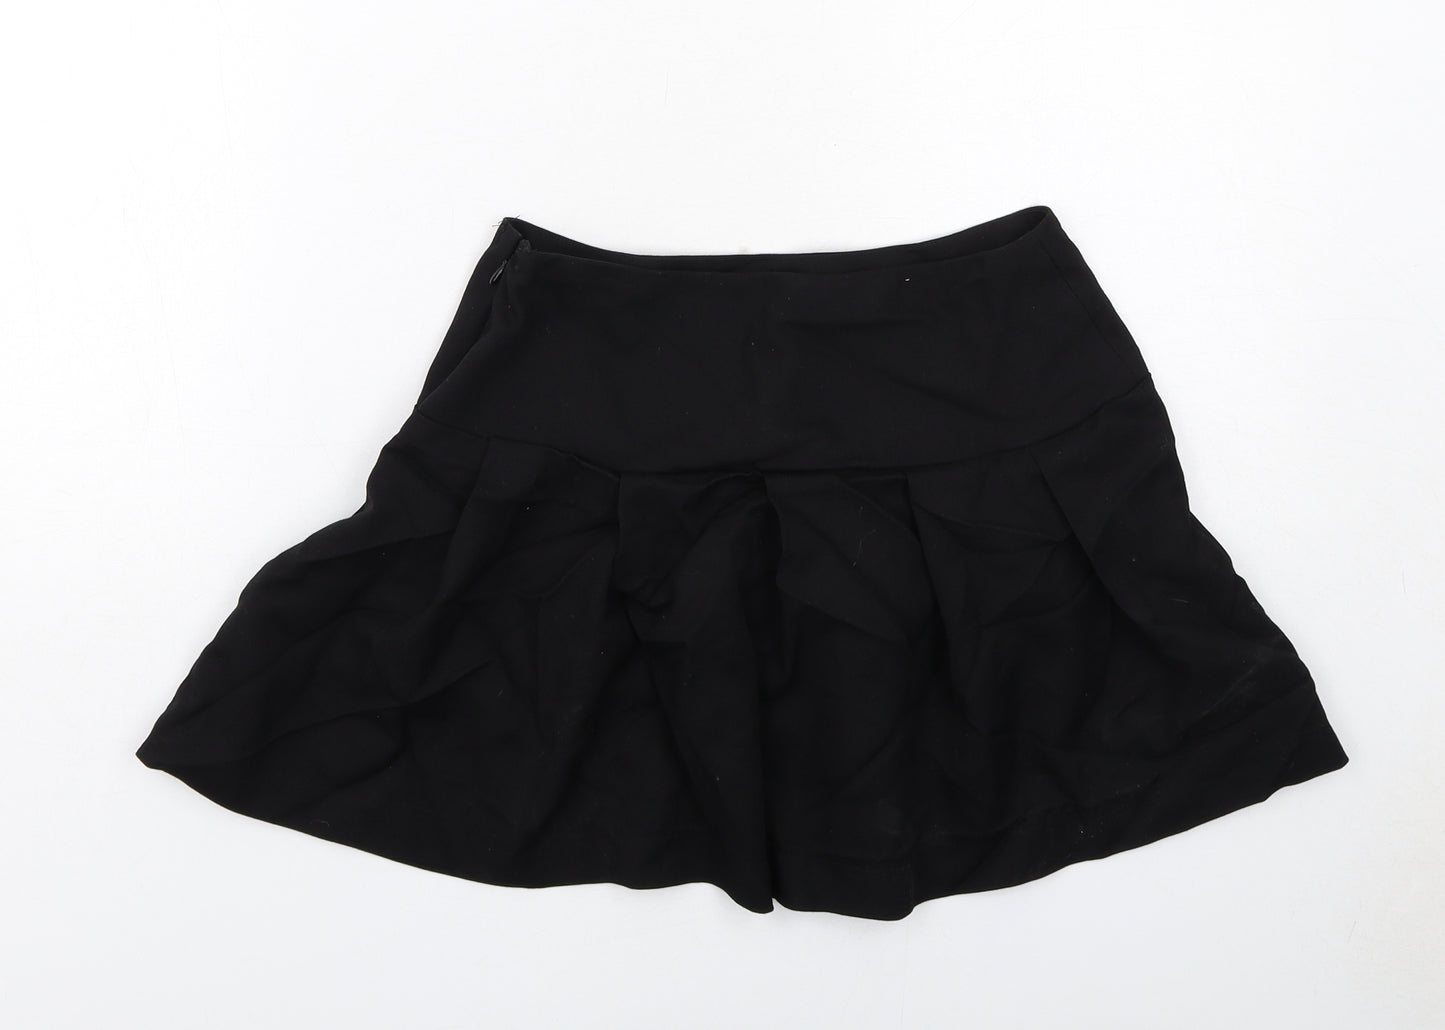 H&M Womens Black Polyester Skater Skirt Size 8 Zip